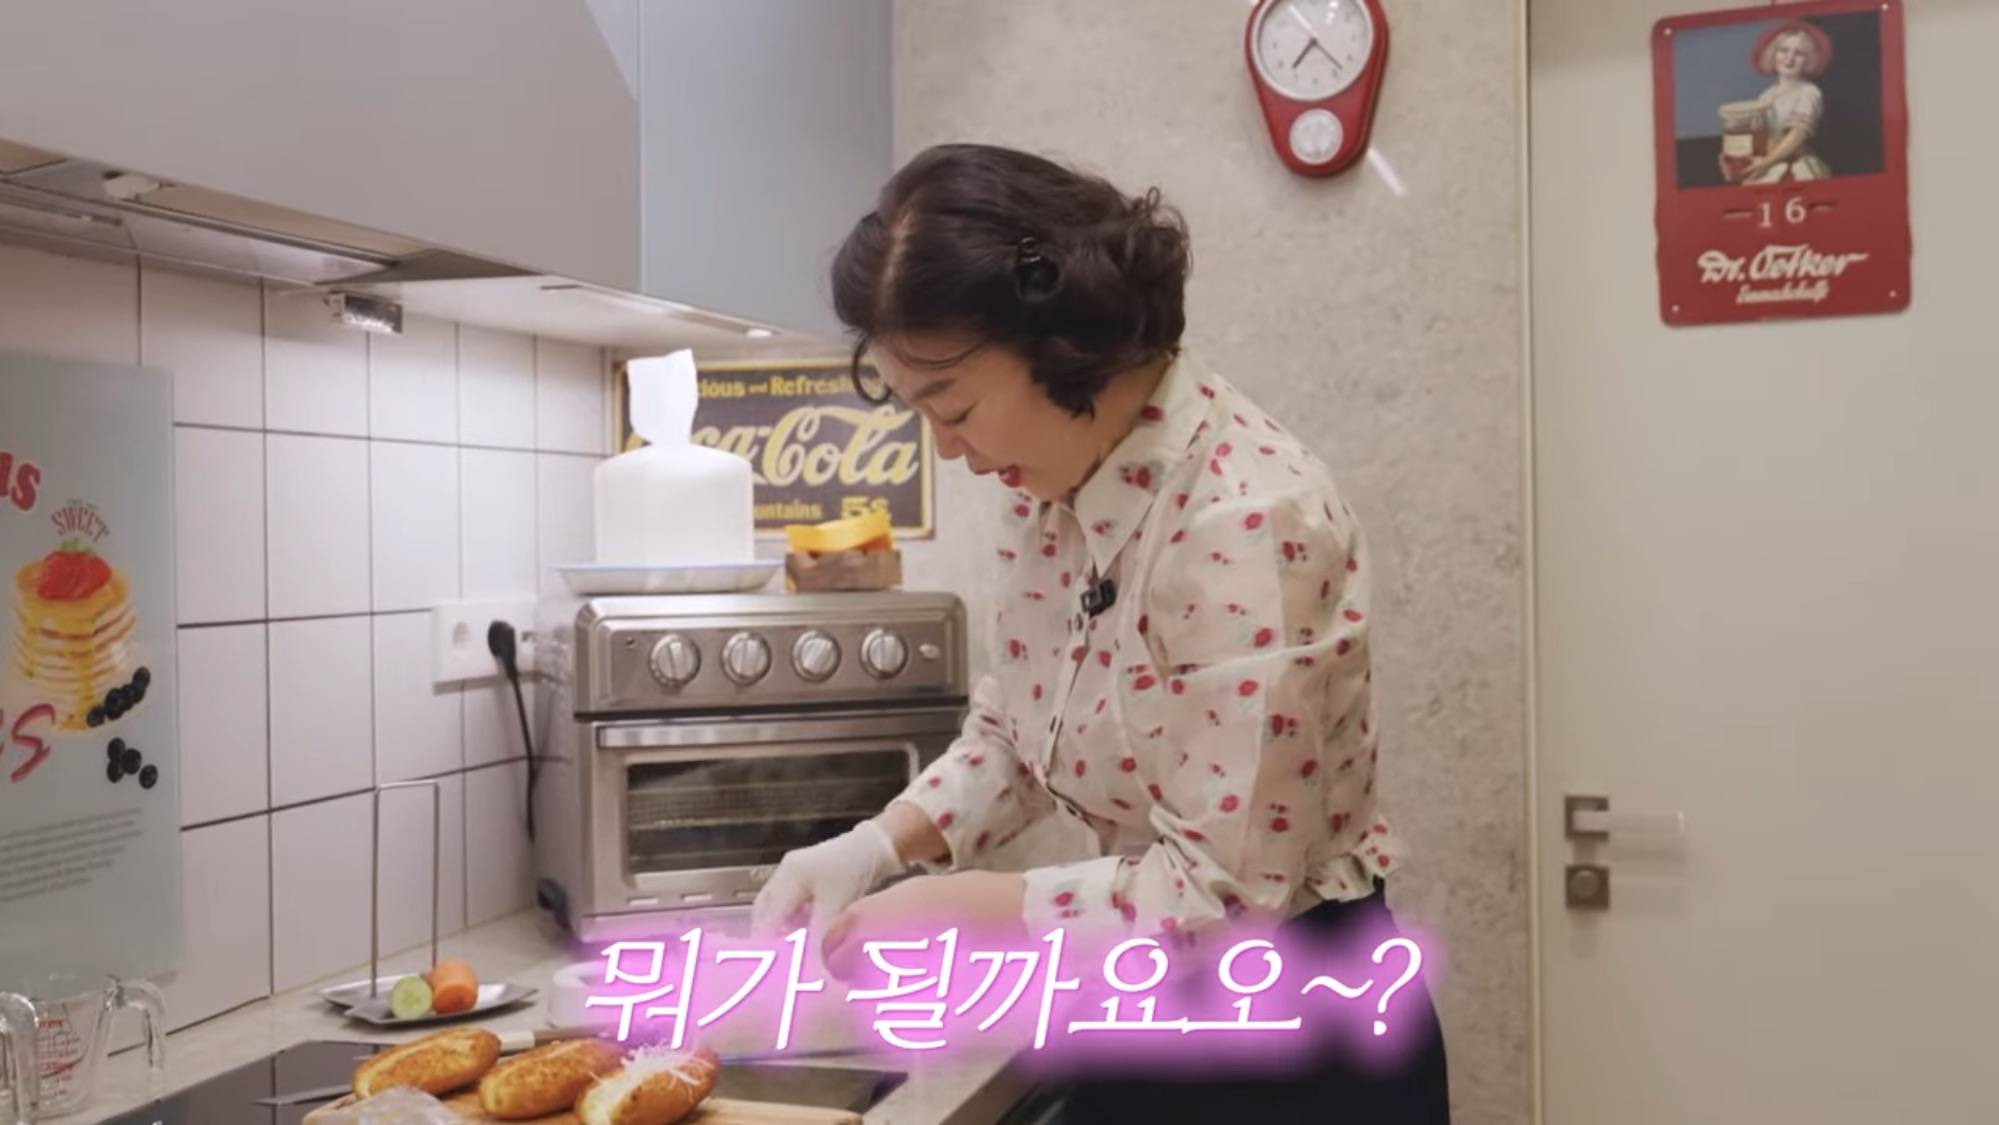 최화정의 냉동핫도그로 초간단 사라다빵 만들기 | 인스티즈